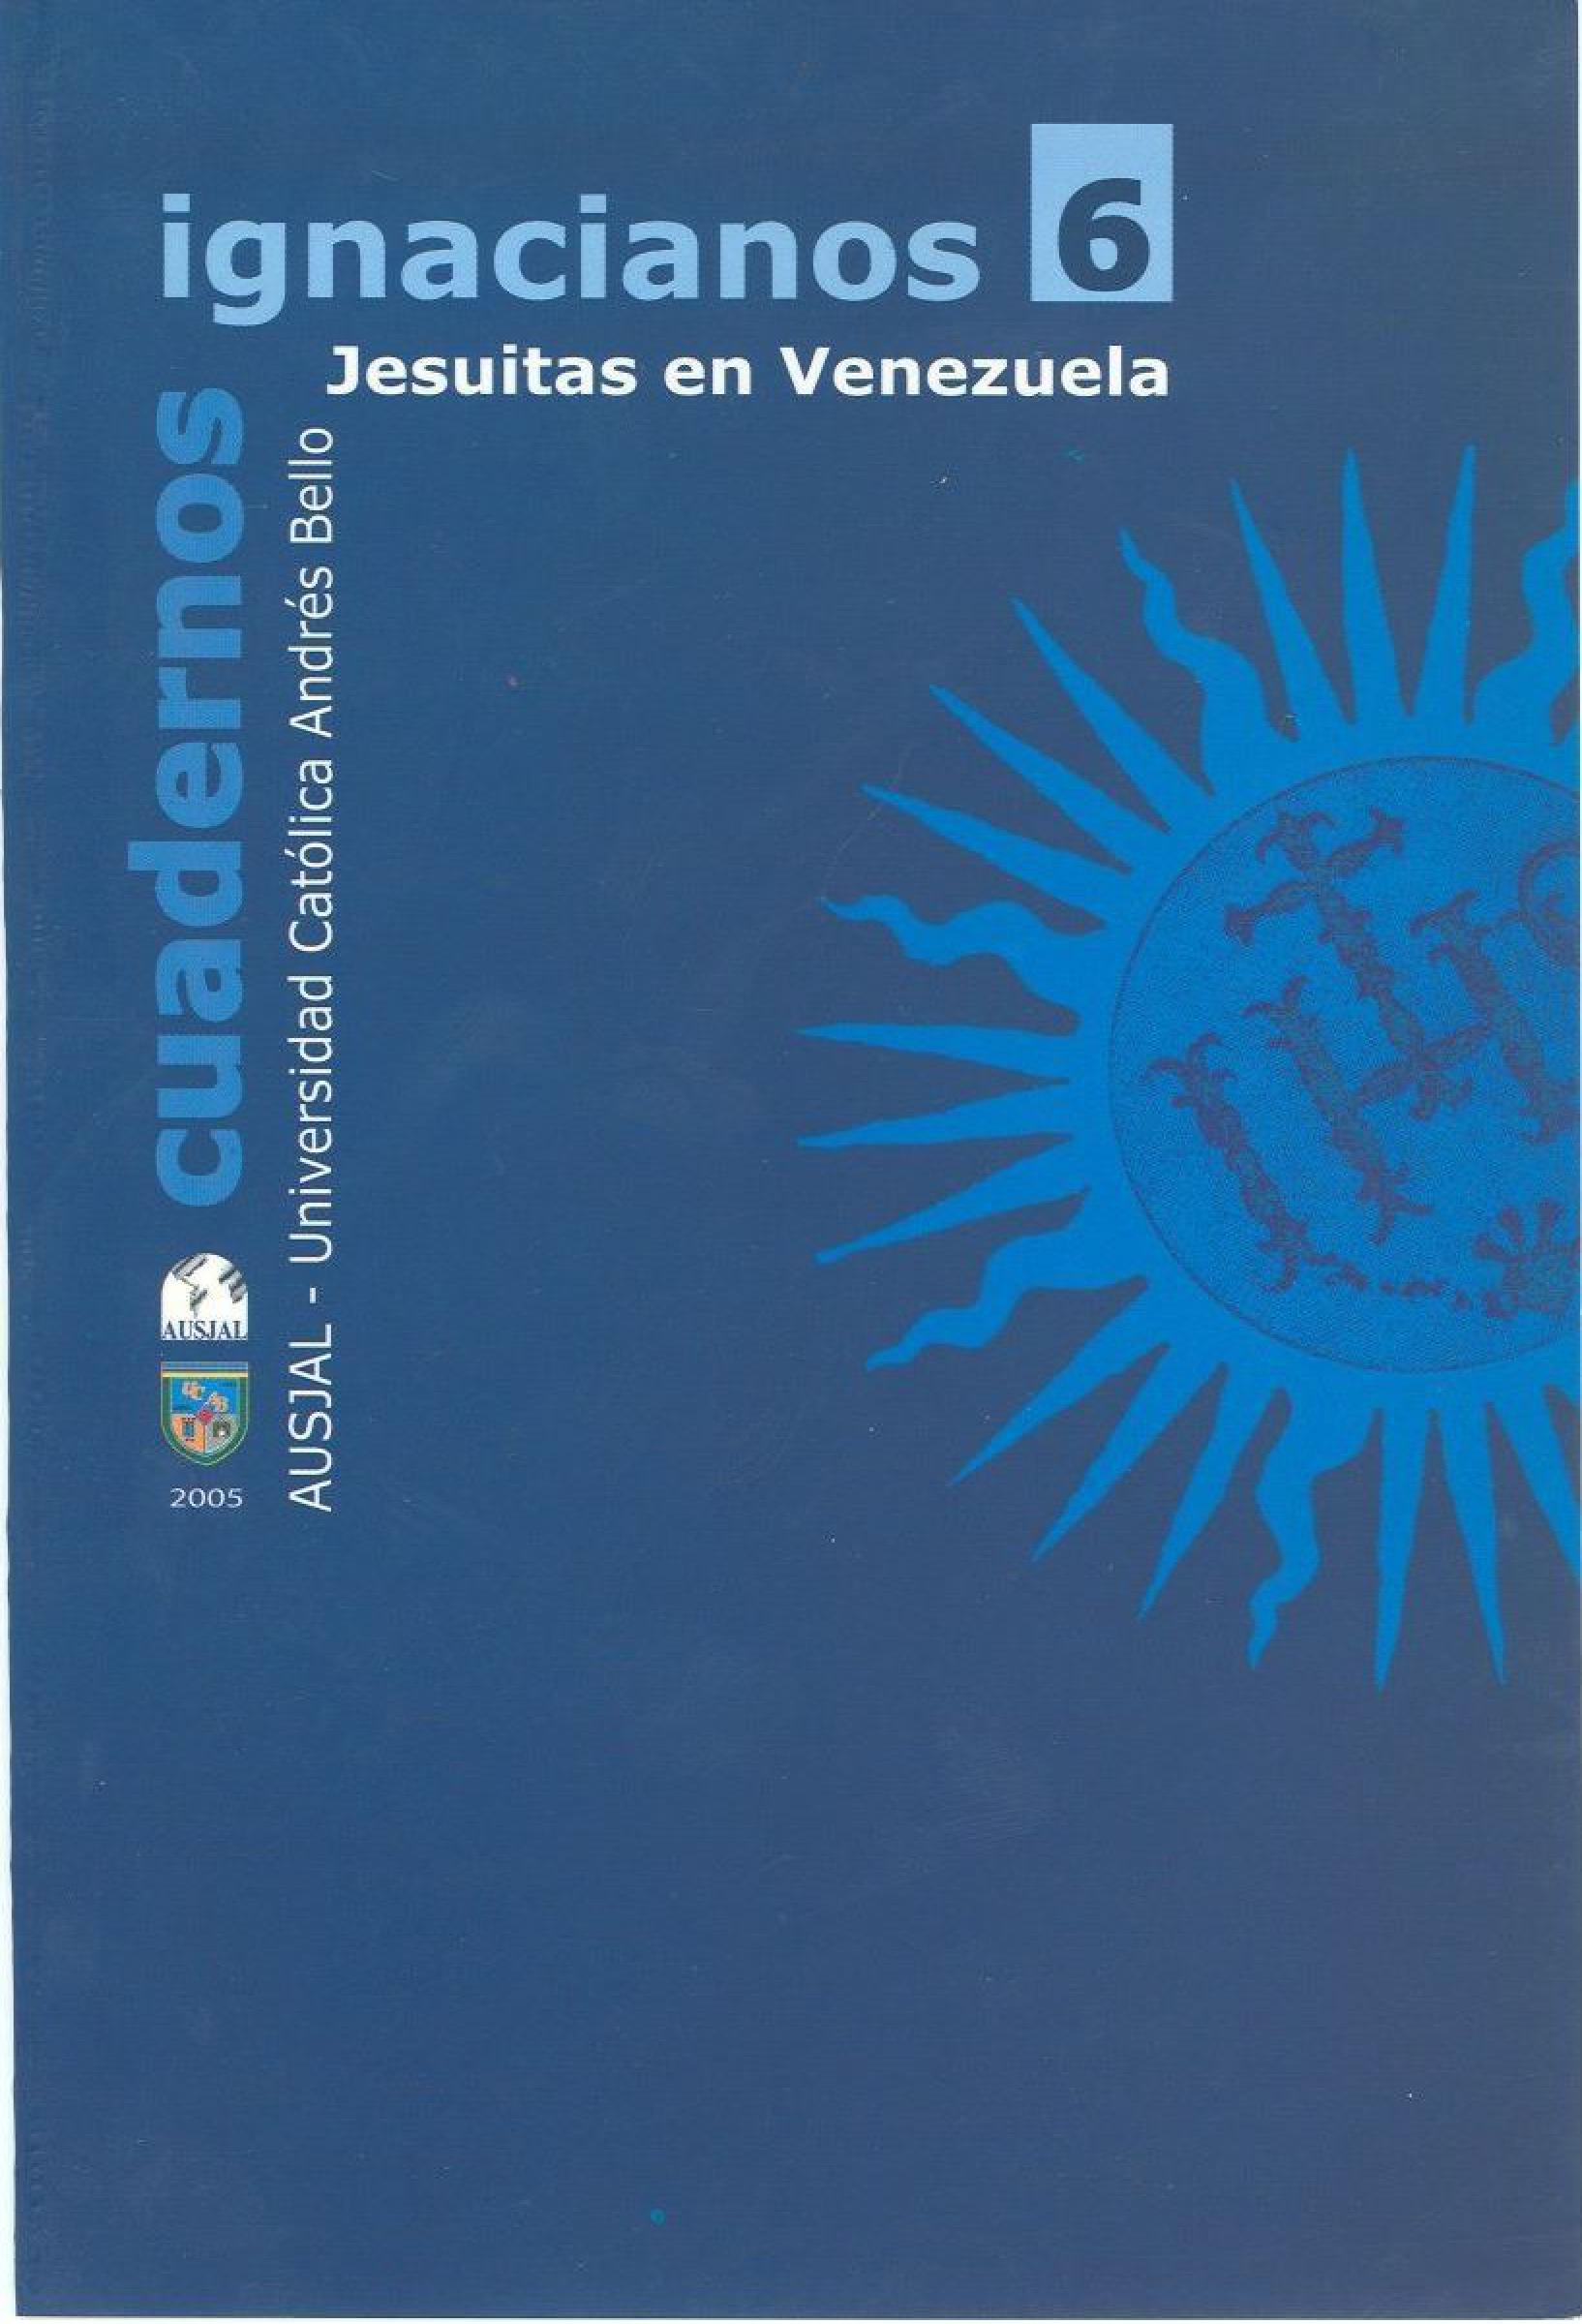                     View No. 6 (2005): Cuadernos Ignacianos
                